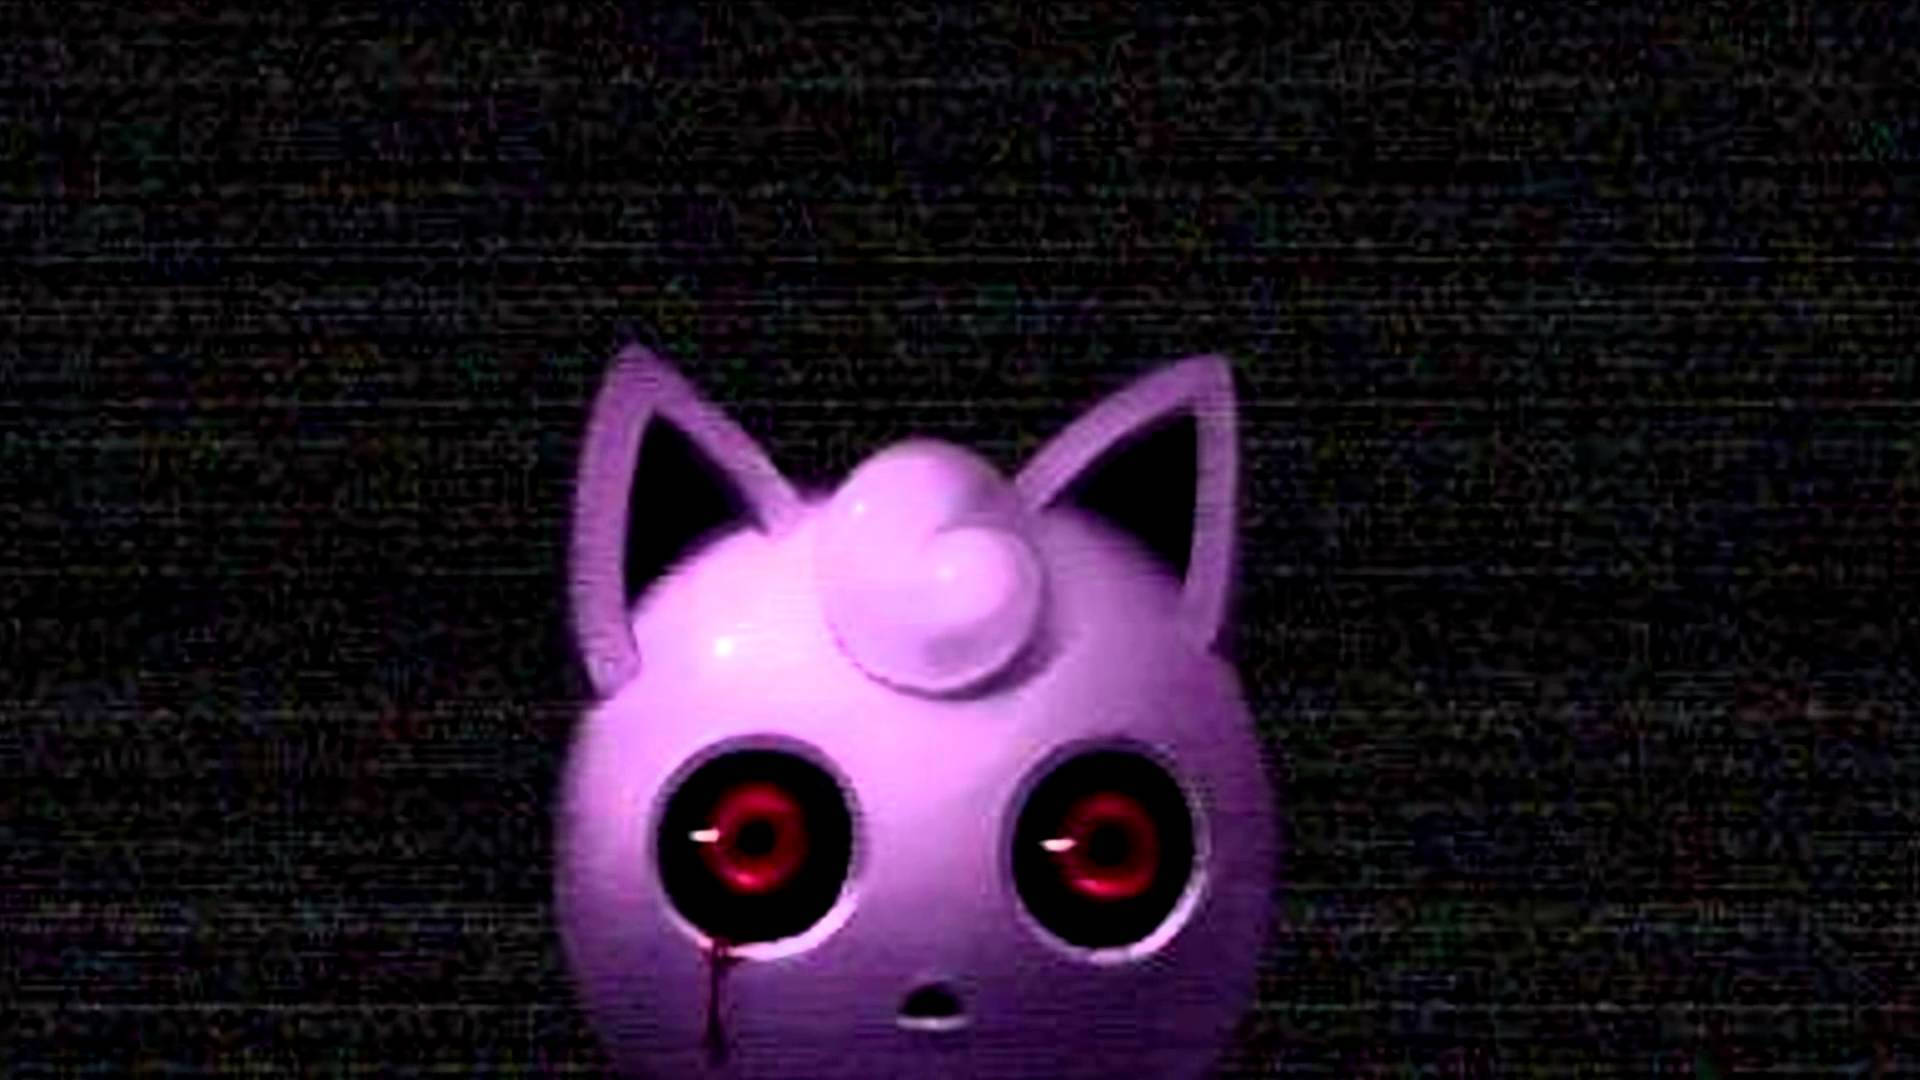 Image Bloodshot Eyes Of Jigglypuff Background